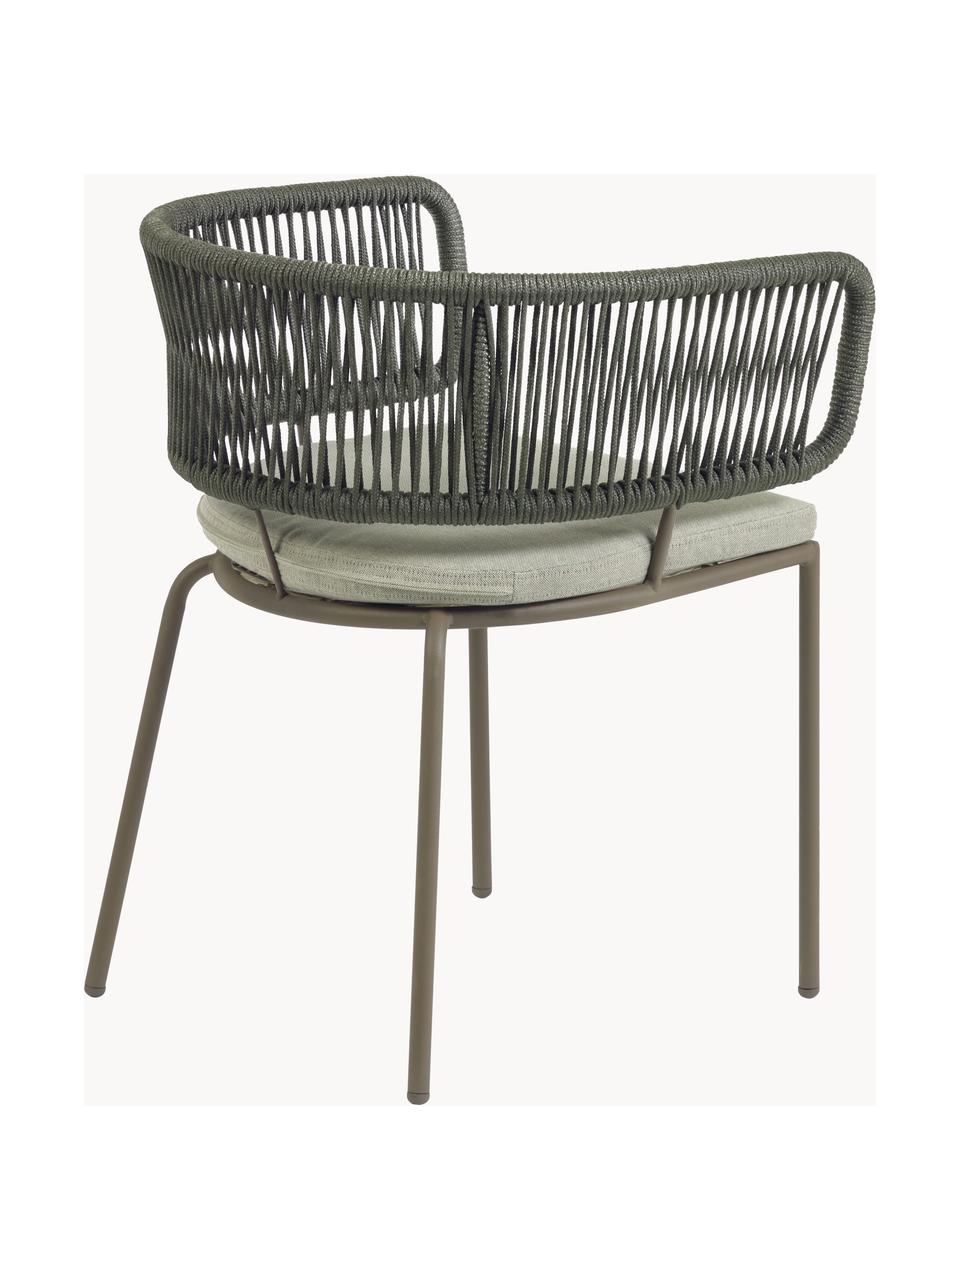 Zahradní židle s výpletem Nadin, Světle béžová, olivově zelená, Š 58 cm, H 48 cm